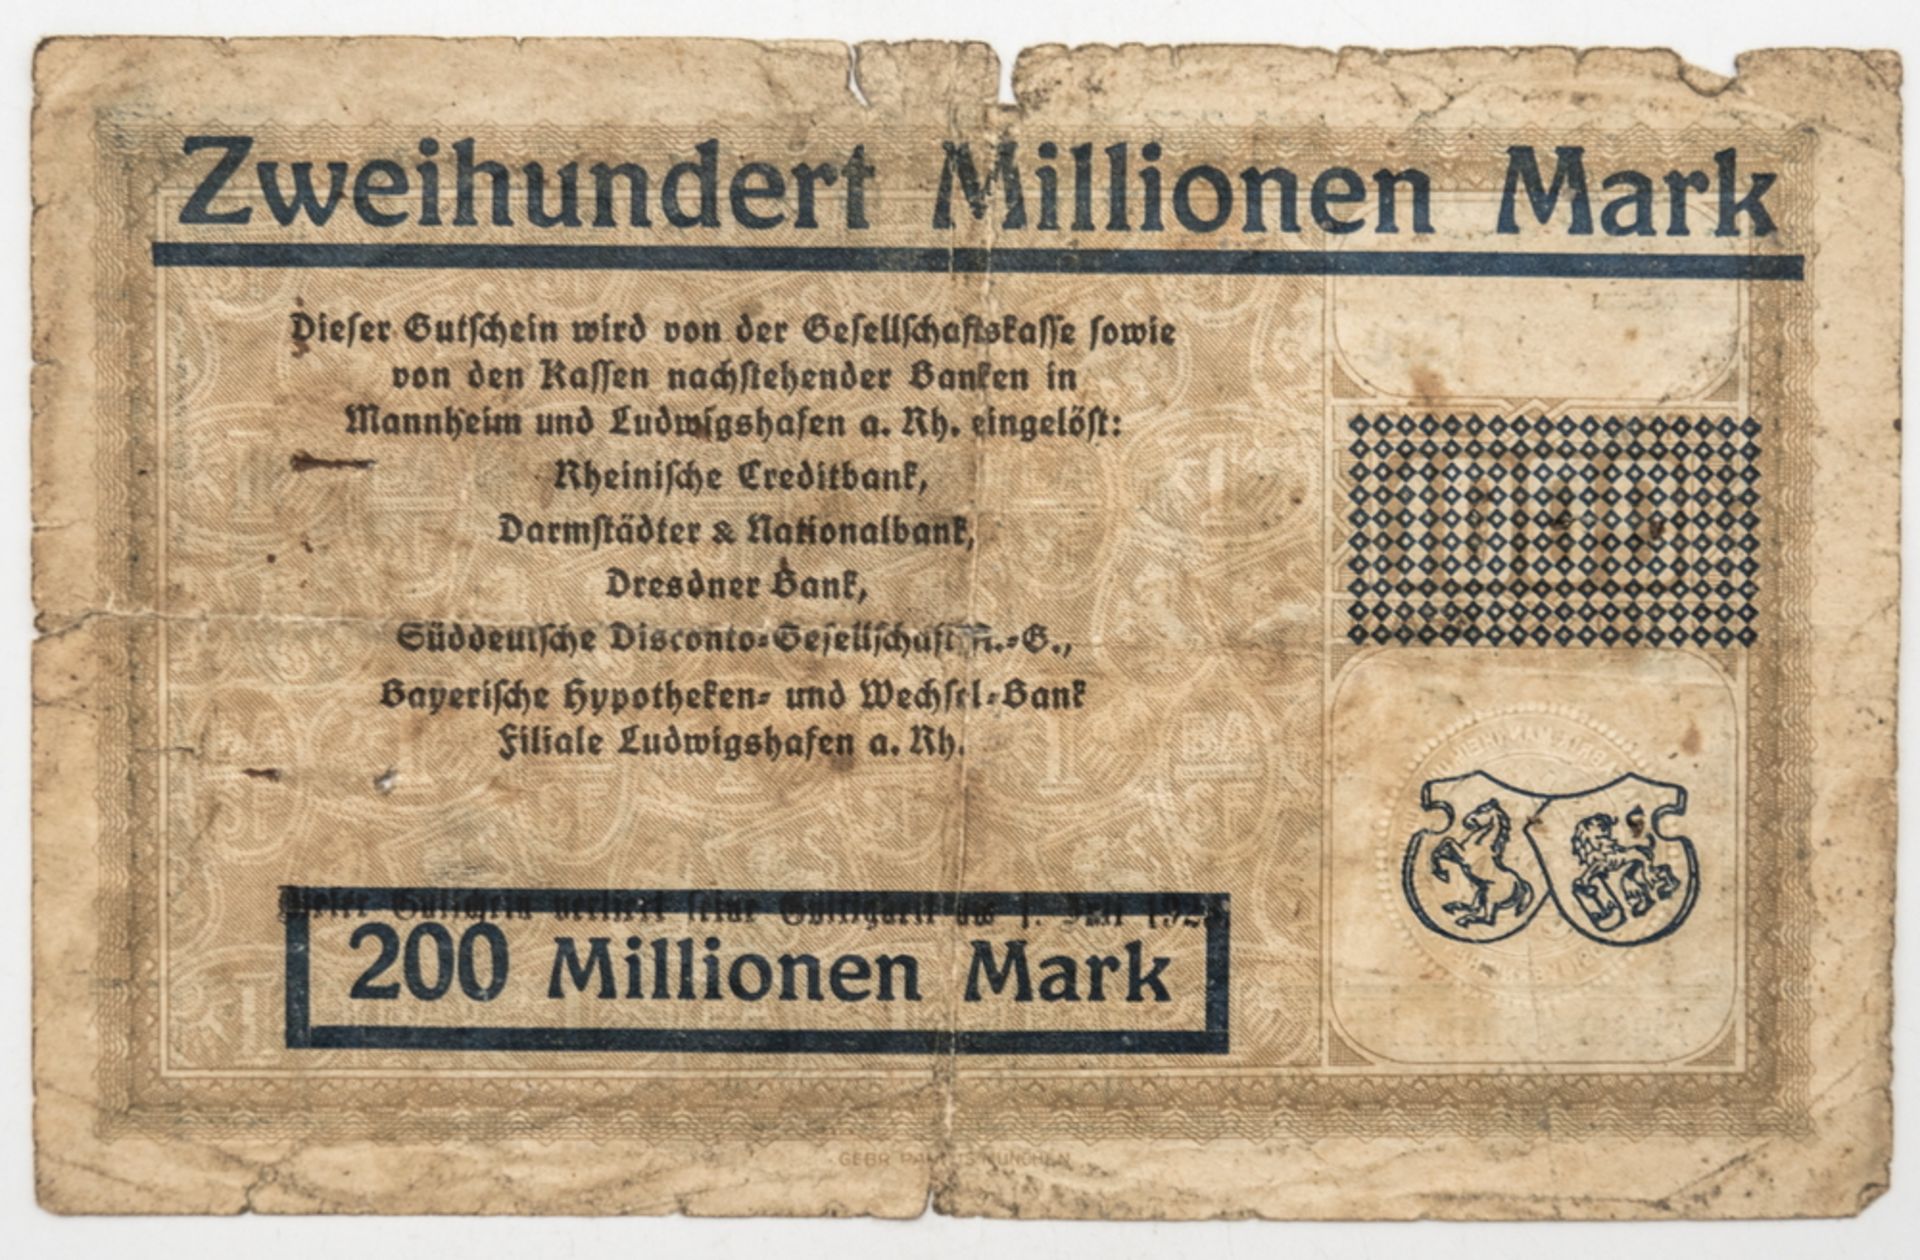 Deutschland 1922, BASF Ludwigshafen a. Rhein, Notgeld 200 Millionen Mark. Erhaltung: ss. - Image 2 of 2